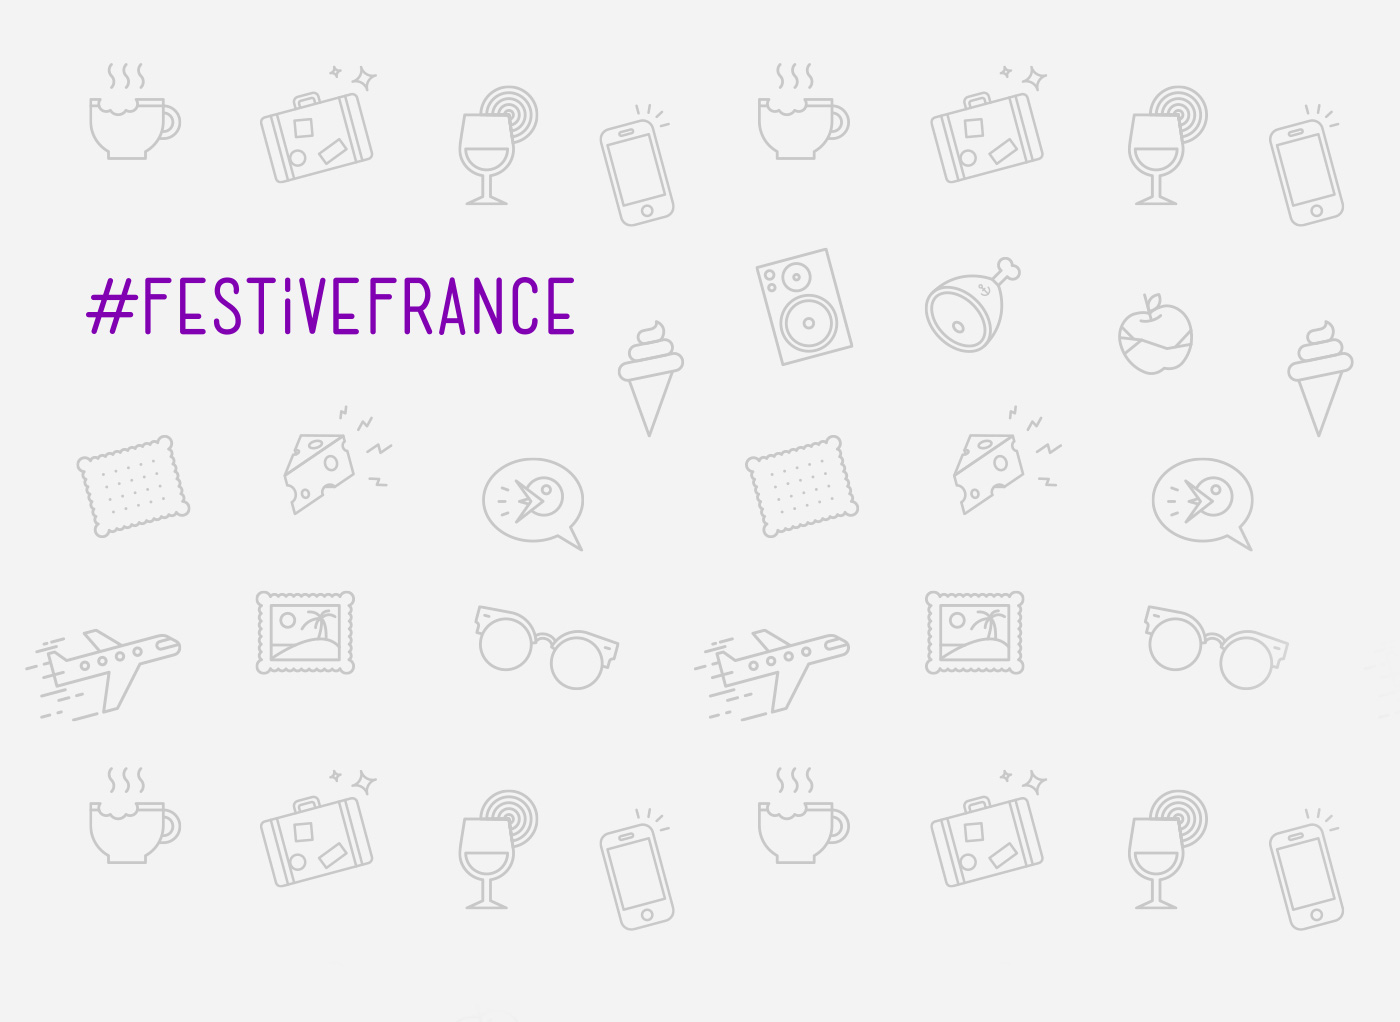 Background design for Festive France